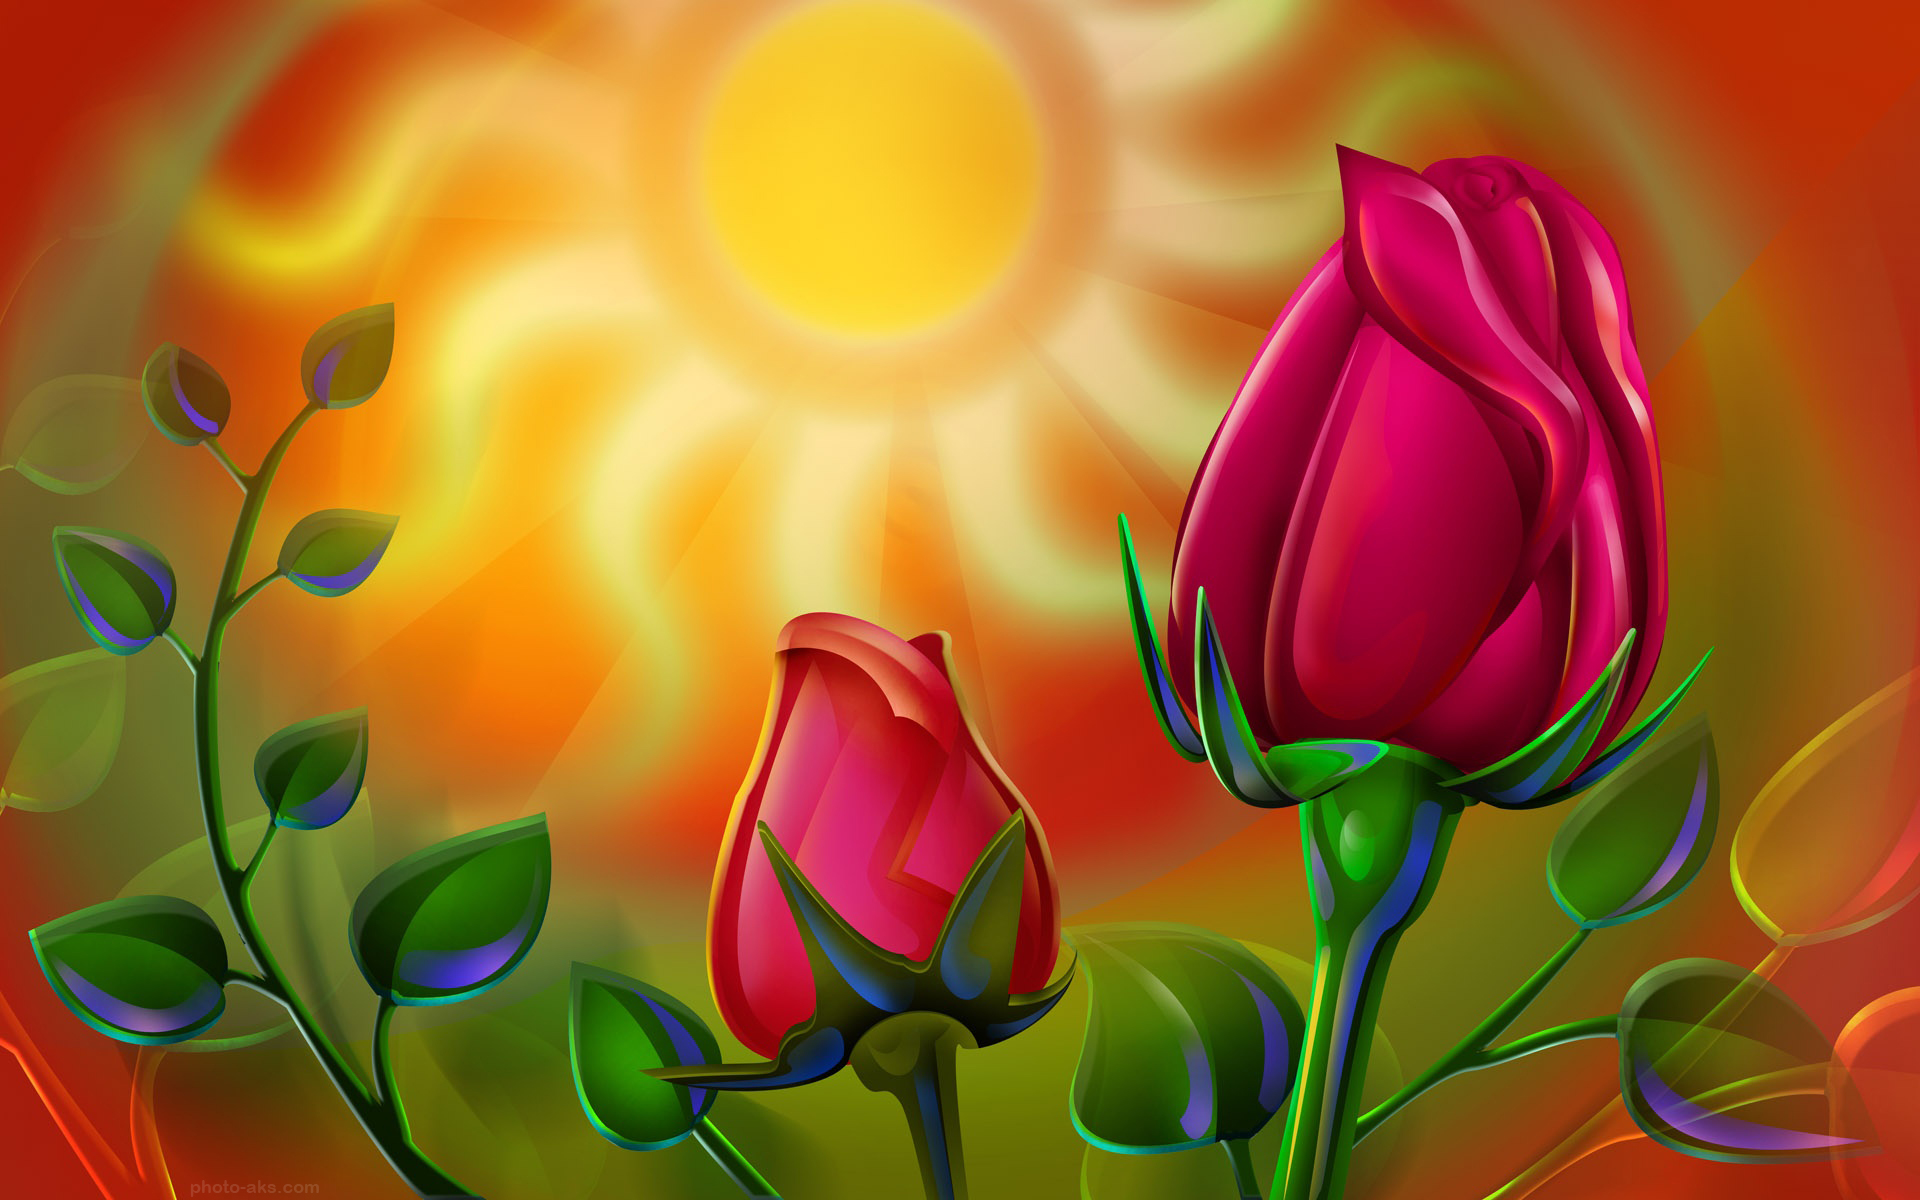 عکس نقاشی گل رز زیبا